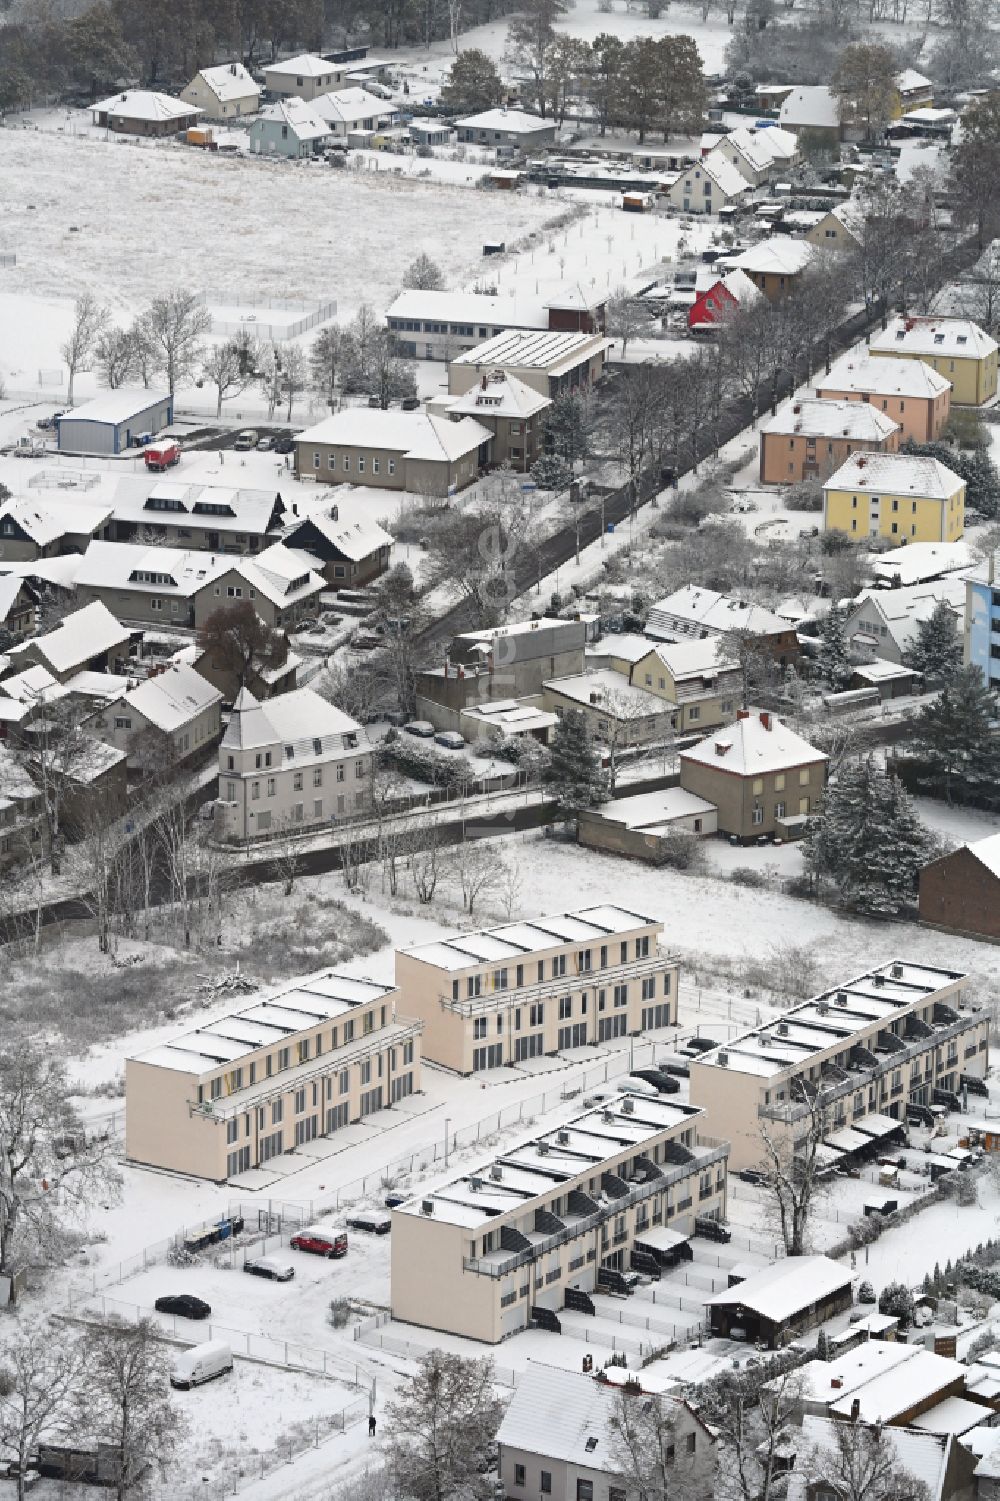 Luftbild Werneuchen - Winterluftbild Neubau- Wohngebiet einer Reihenhaus- Siedlung in Werneuchen im Bundesland Brandenburg, Deutschland